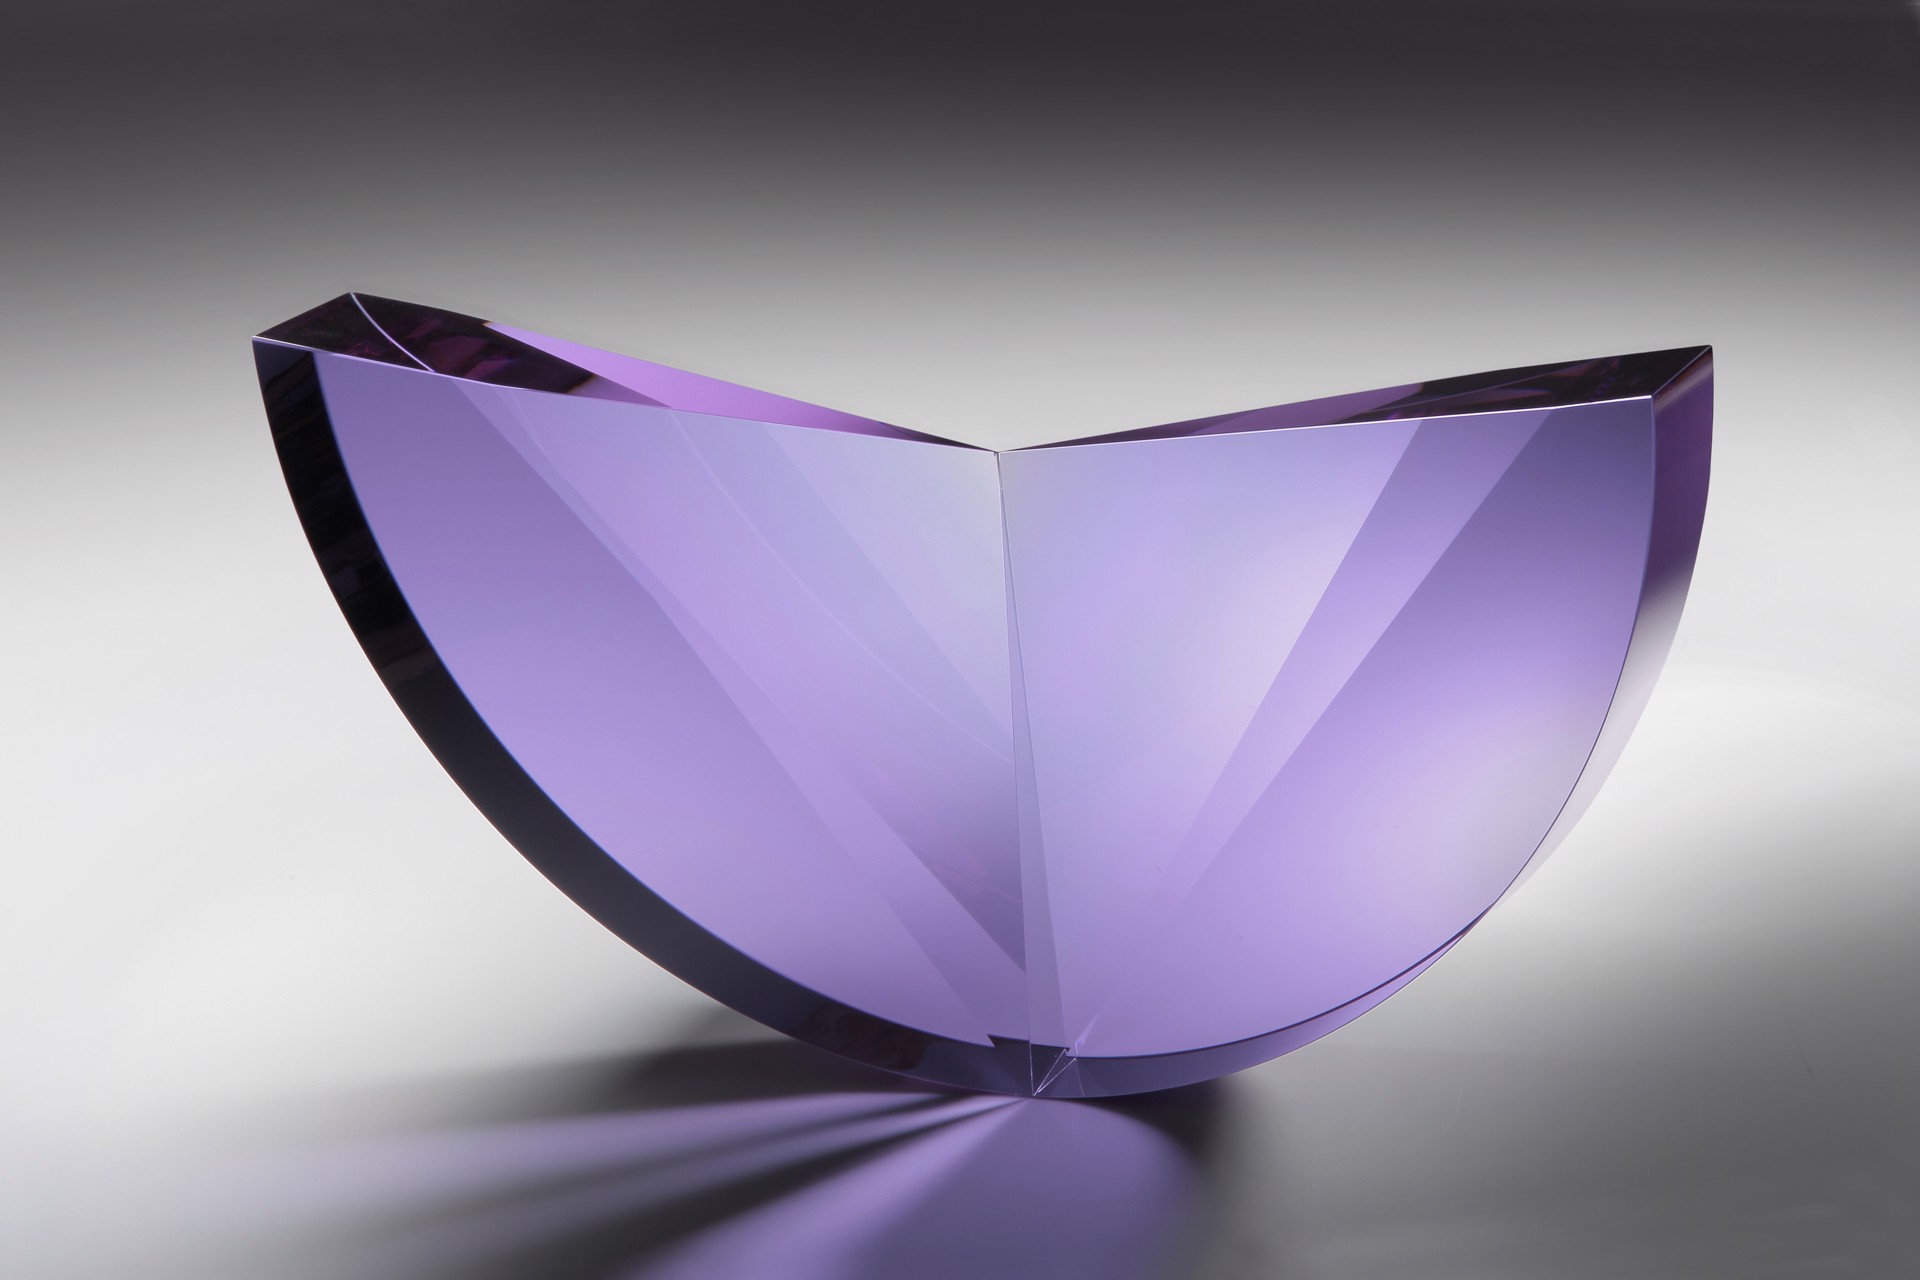 "Purple Semicircle" by Tomáš Brzon